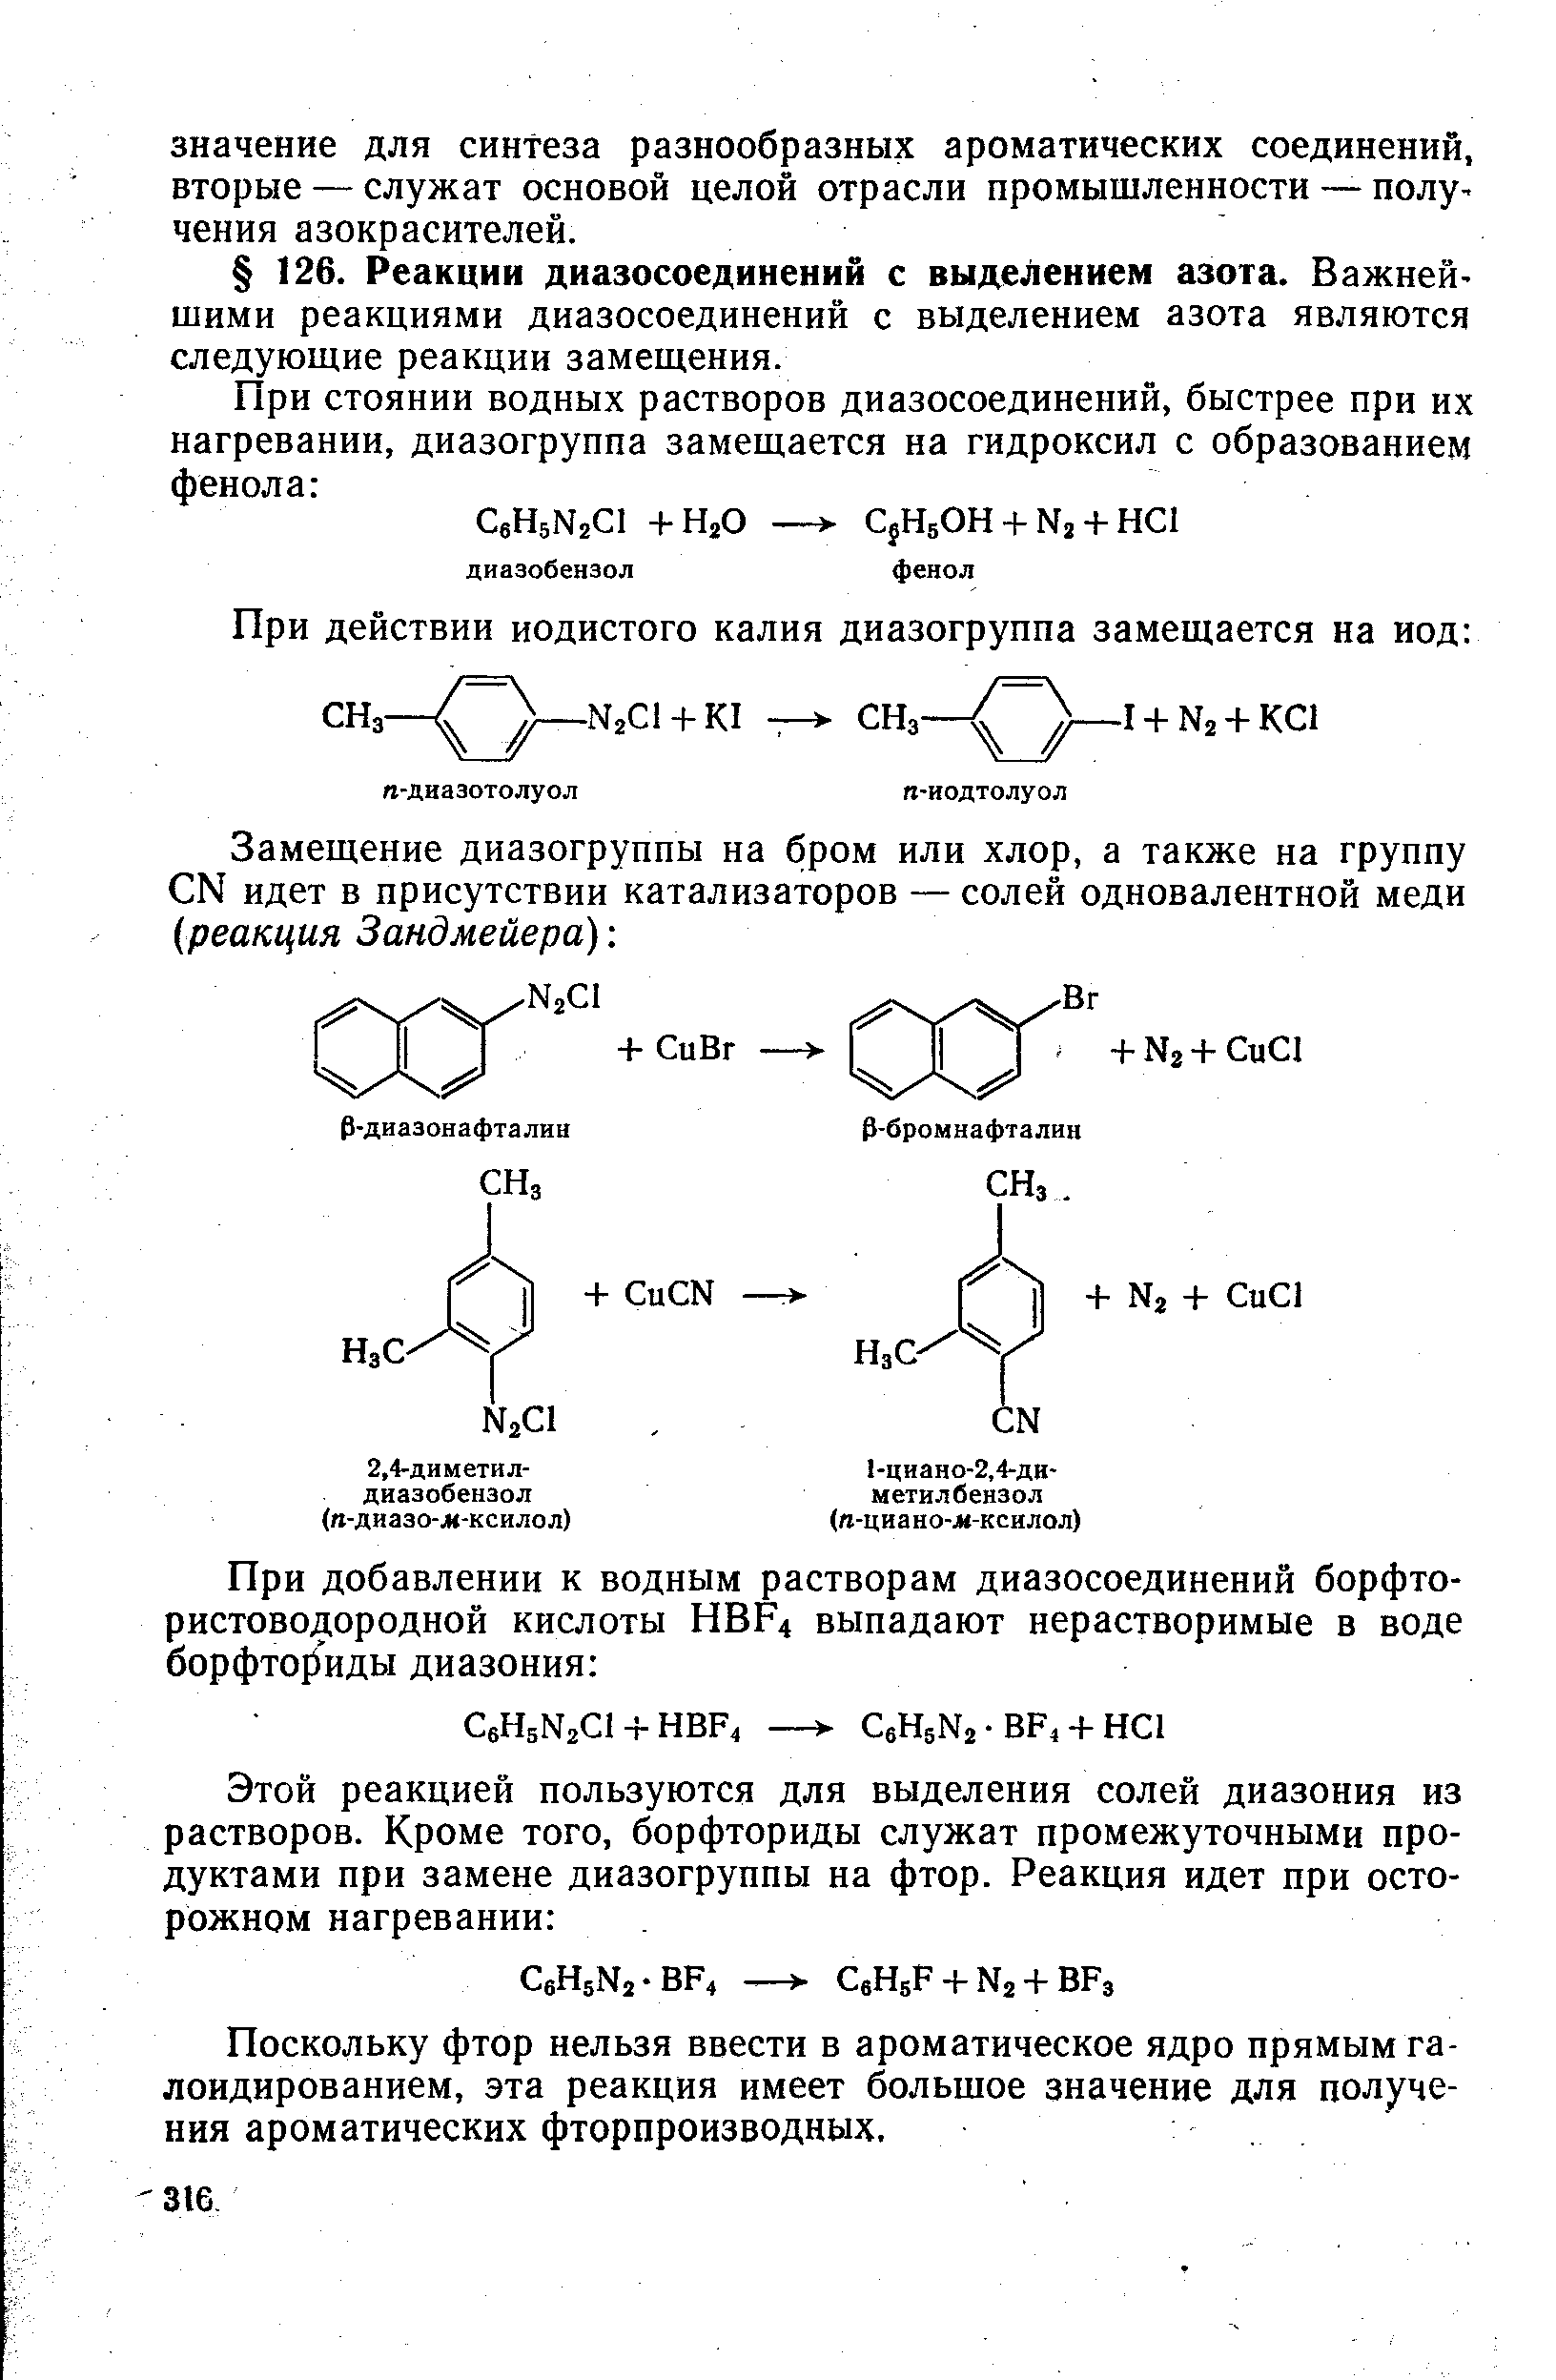 Поскольку фтор нельзя ввести в ароматическое ядро прямым га-лоидированием, эта реакция имеет большое значение для получения ароматических фторпроизводных.